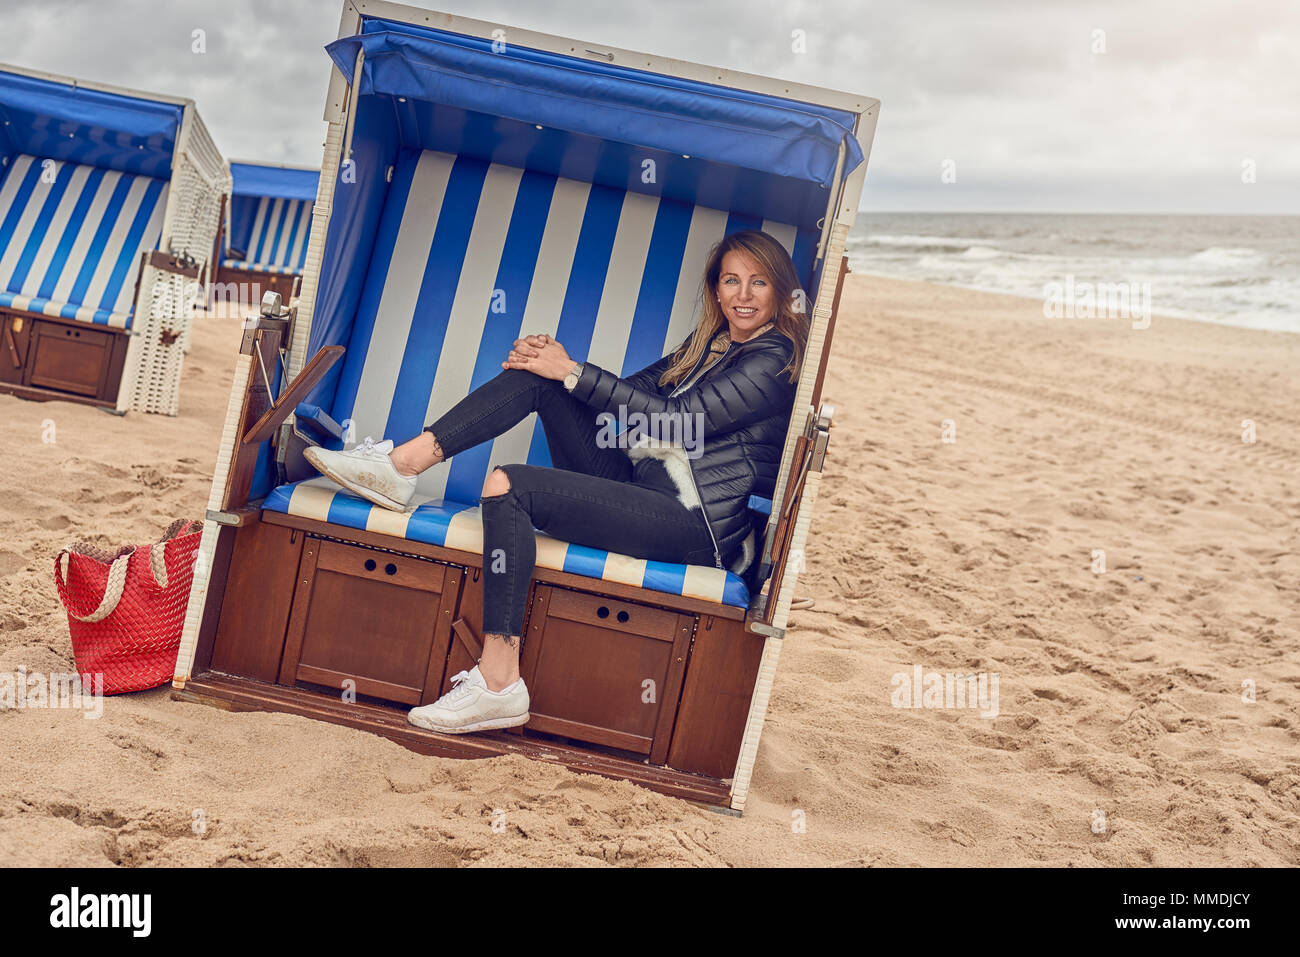 Attraktive schlanke blonde Frau sitzt in einer Strandhütte mit blau und weiß gestreifte Textil an einem Sandstrand an einem bewölkten Tag in die Kamera lächeln Stockfoto